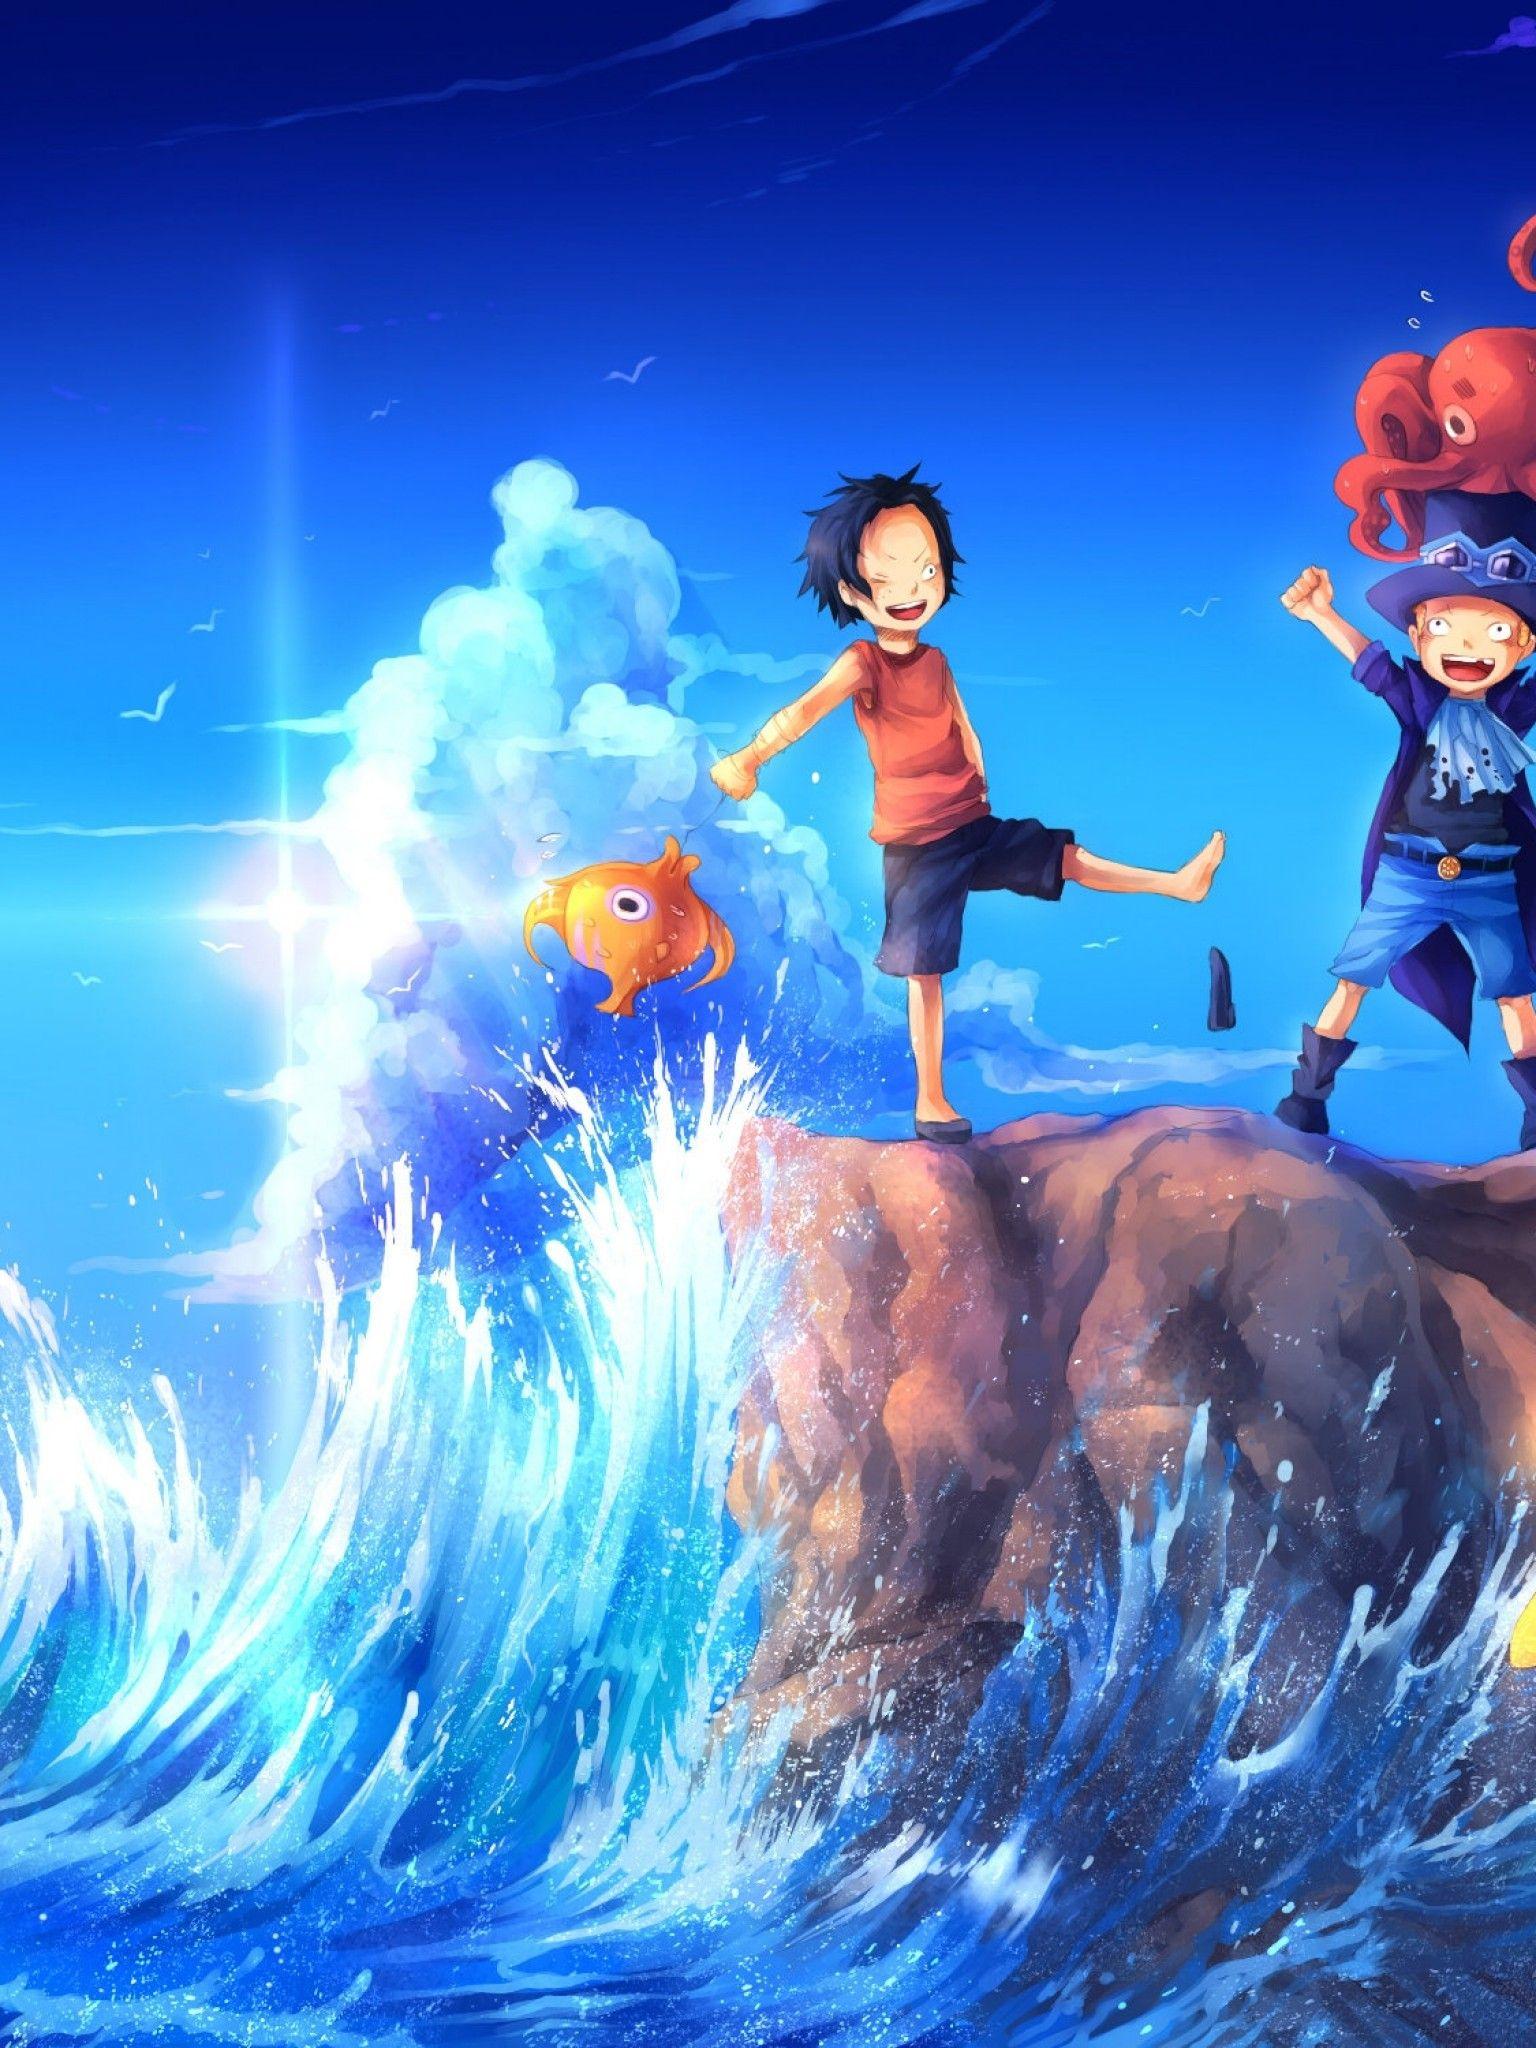 Với bộ sưu tập hình nền One Piece cho iPad, bạn sẽ được trải nghiệm những hình ảnh siêu sắc nét và đầy sống động. Những chi tiết tinh tế và thiết kế phong cách sẽ giúp bạn tận hưởng những giây phút công việc và giải trí tuyệt vời.